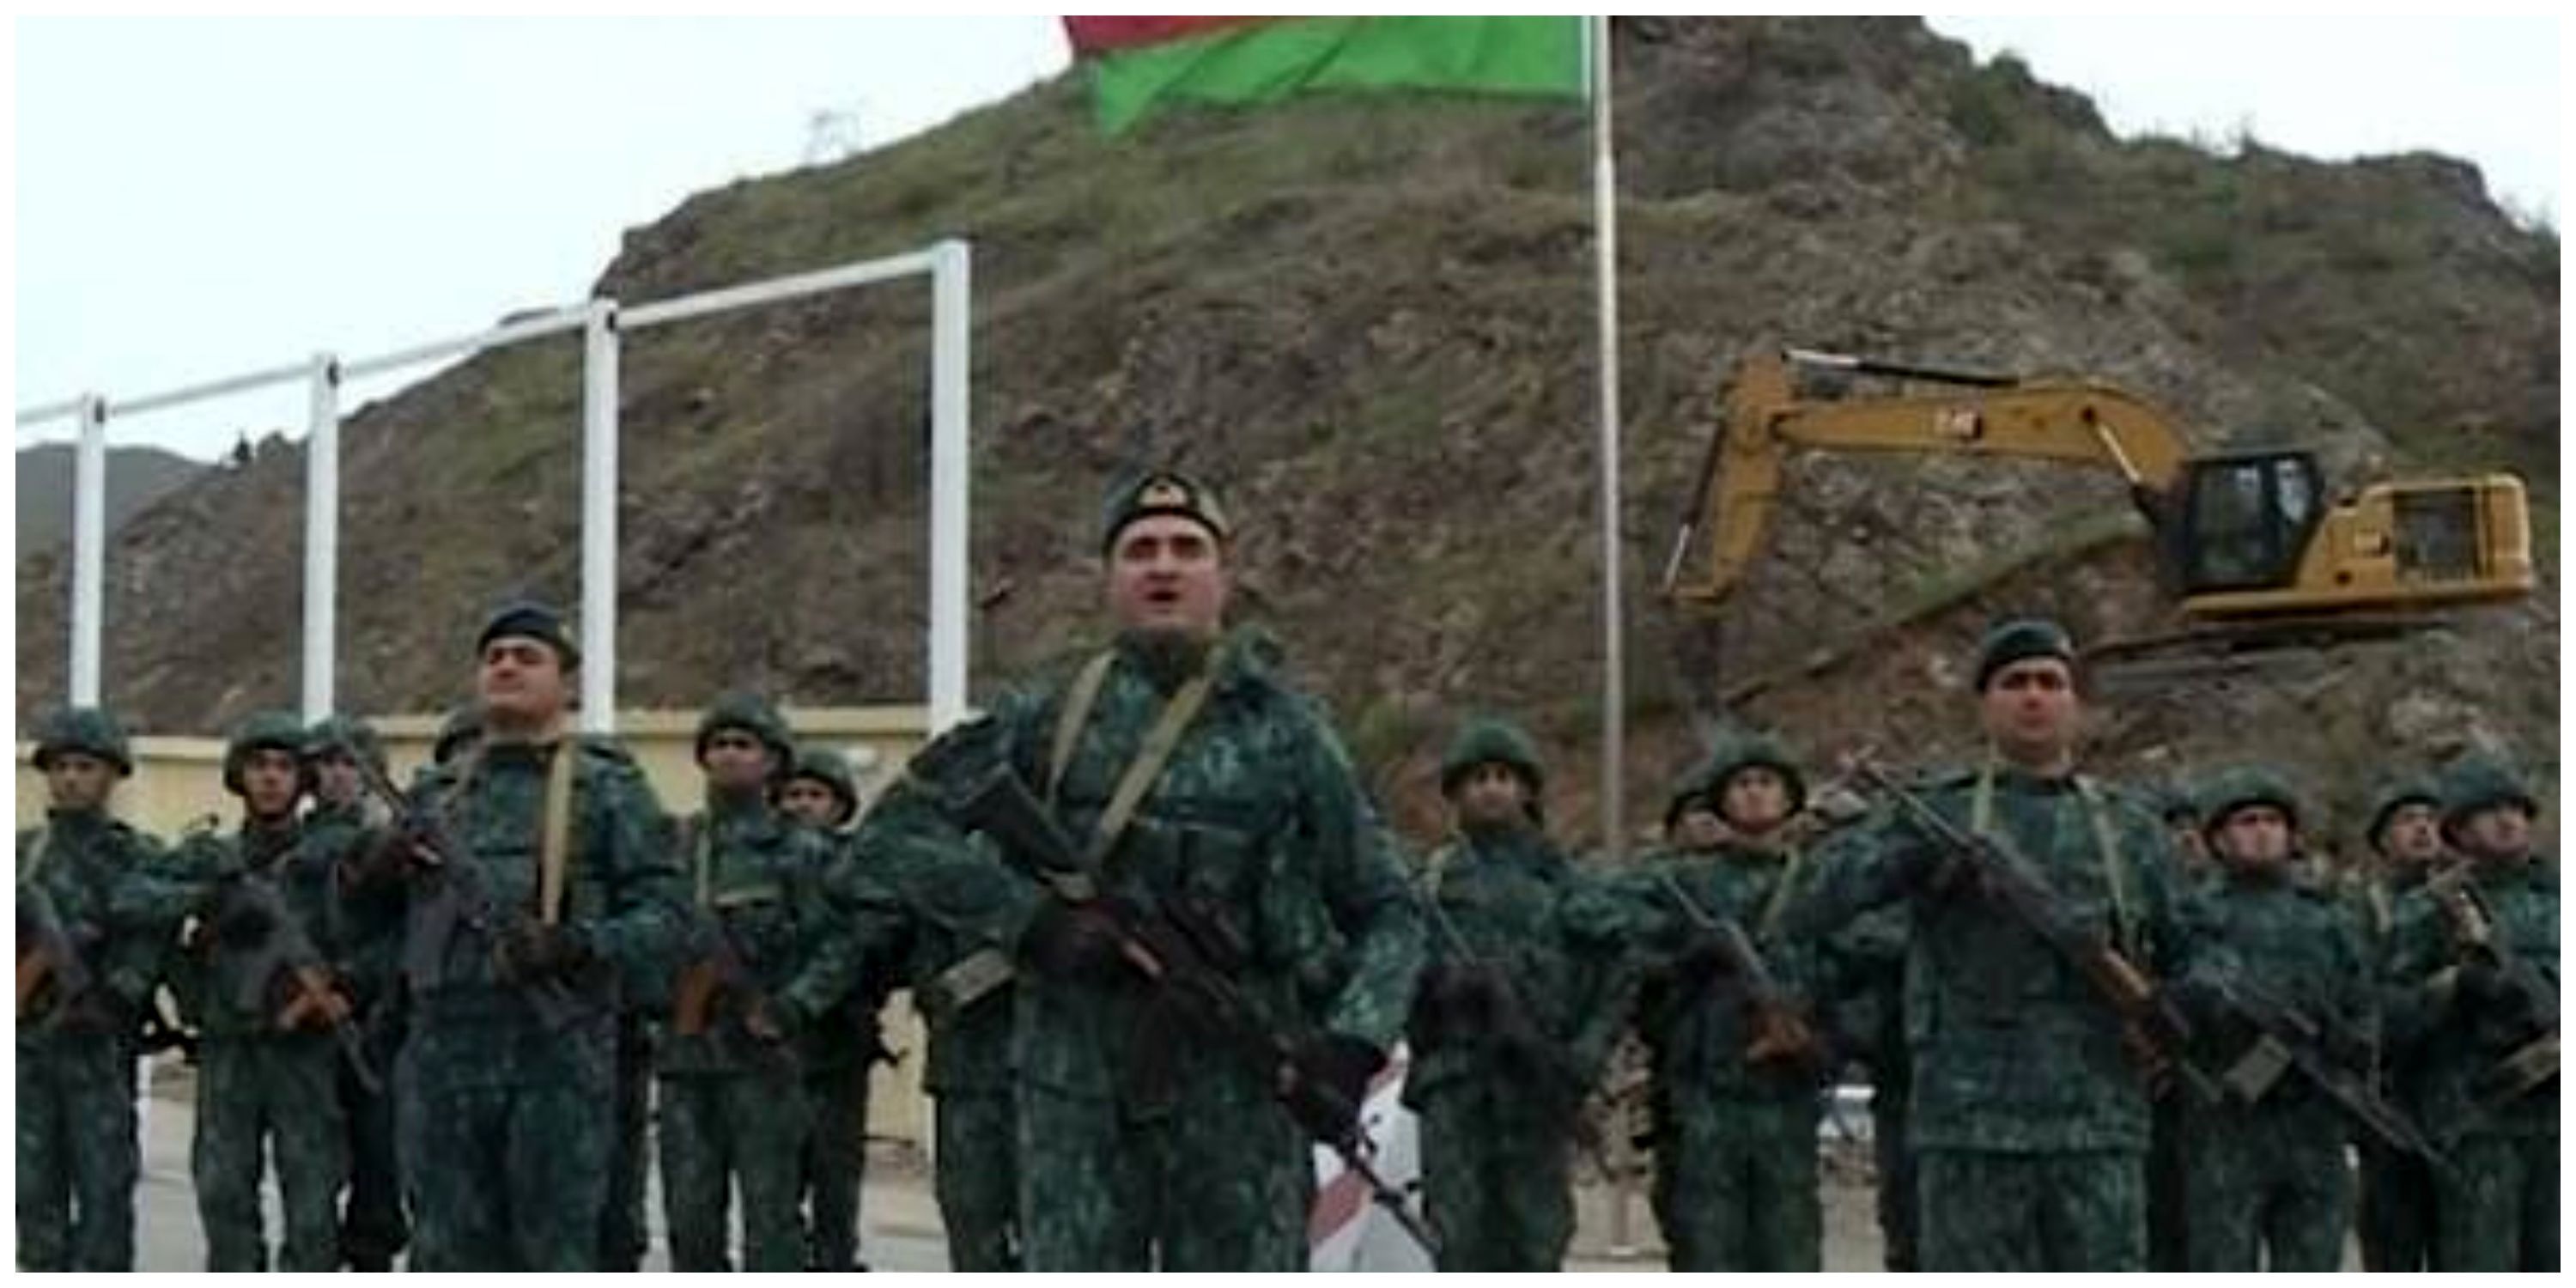  پرچم آذربایجان در مرز لاچین به اهتزاز درآمد+عکس